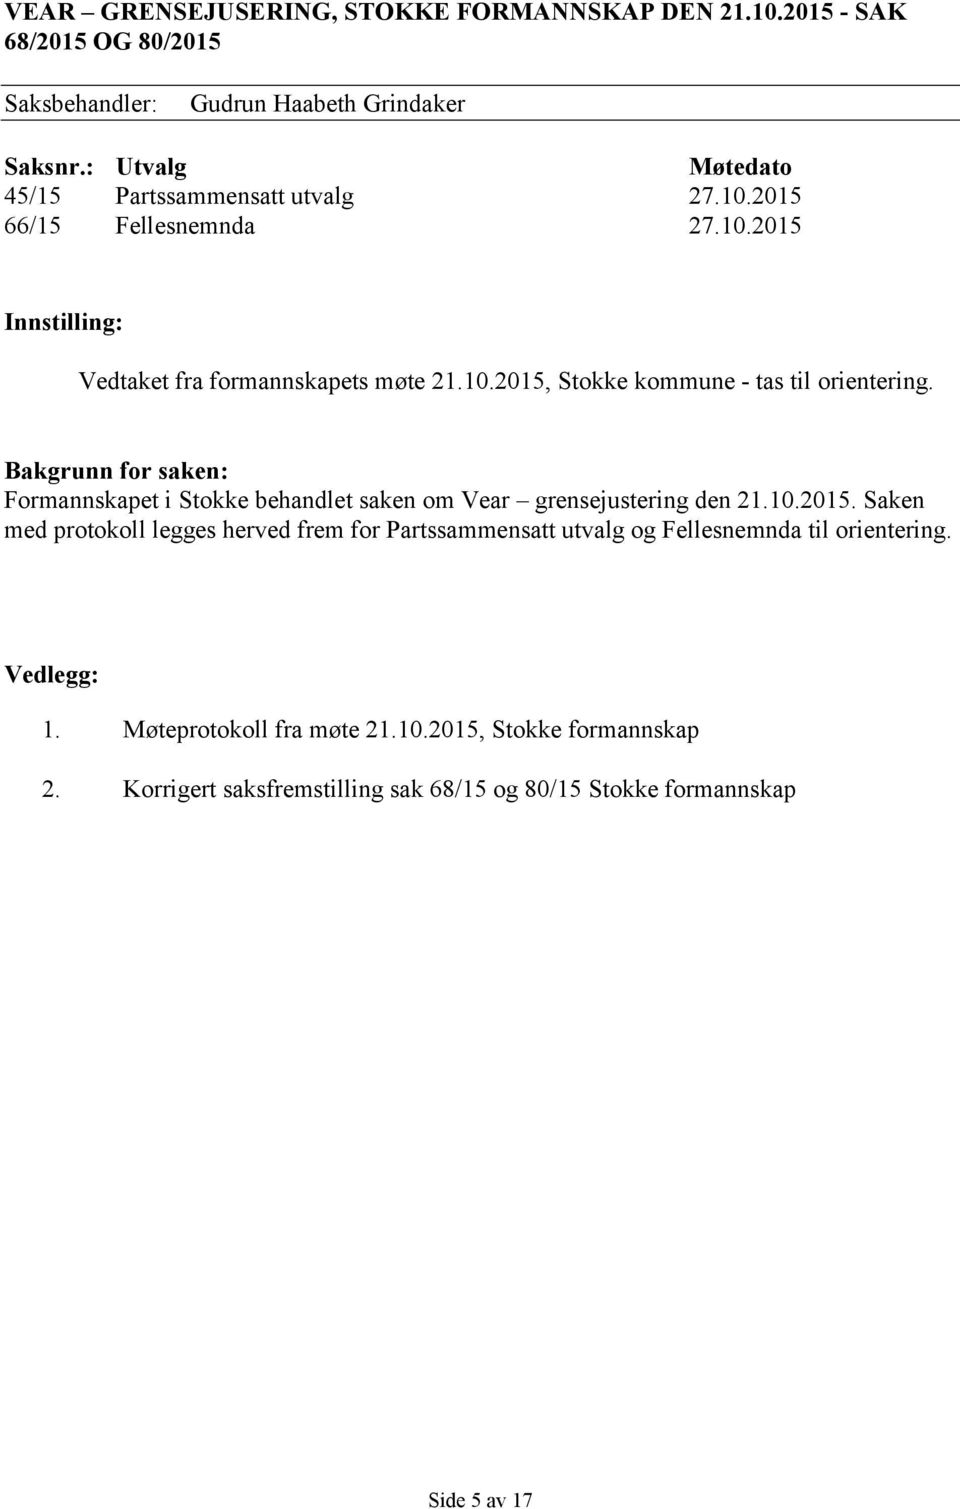 Bakgrunn for saken: Formannskapet i Stokke behandlet saken om Vear grensejustering den 21.10.2015.